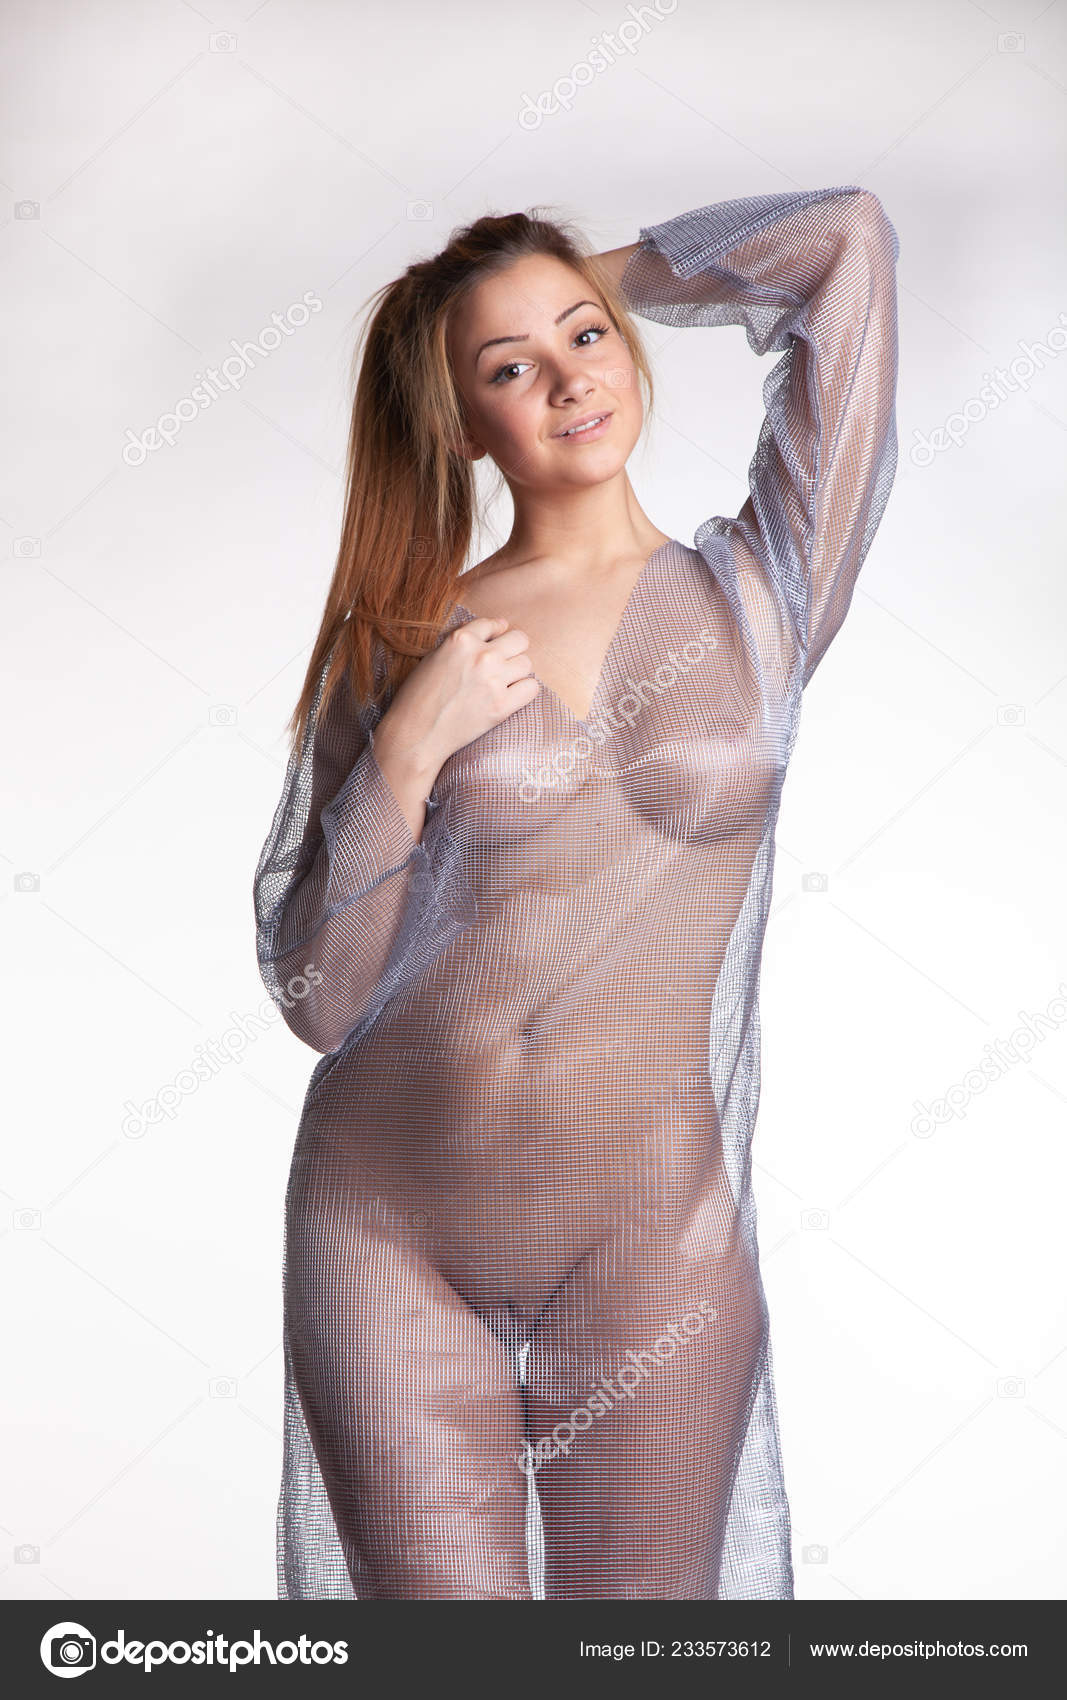 https://st4n.depositphotos.com/10086424/23357/i/1600/depositphotos_233573612-stock-photo-young-beautiful-girl-posing-nude.jpg